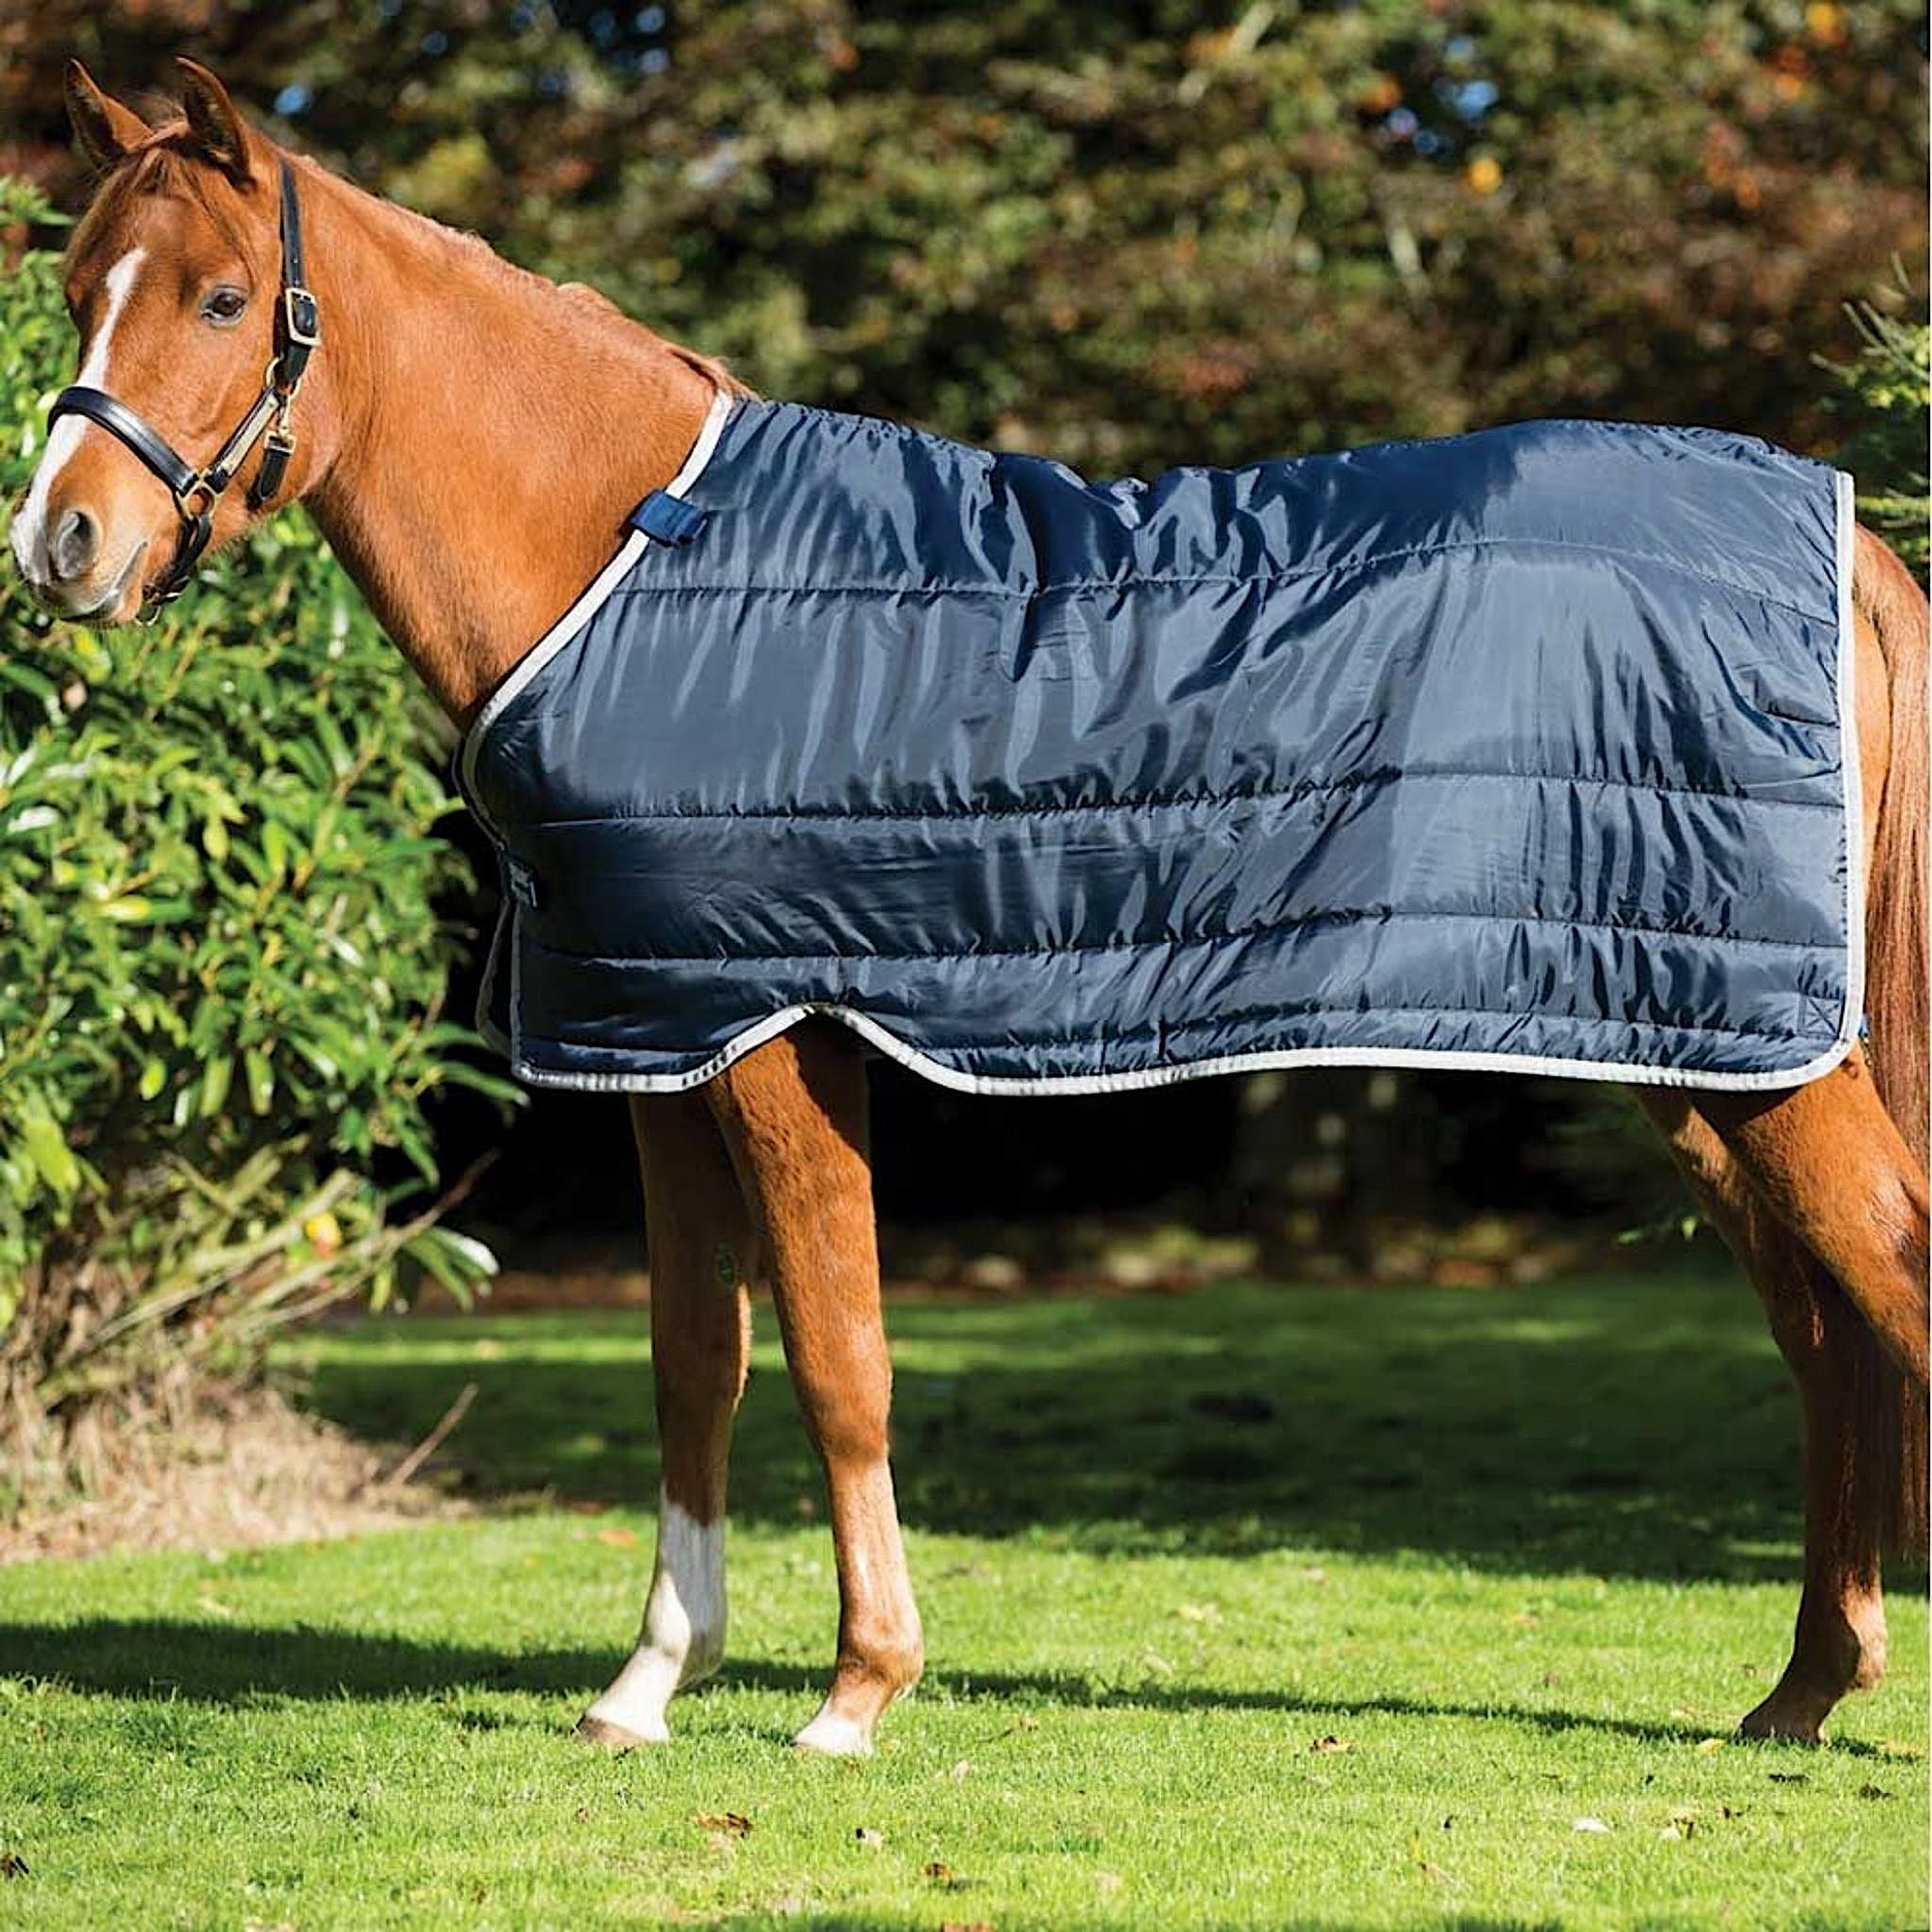 Horse wearing blue doona rug liner.